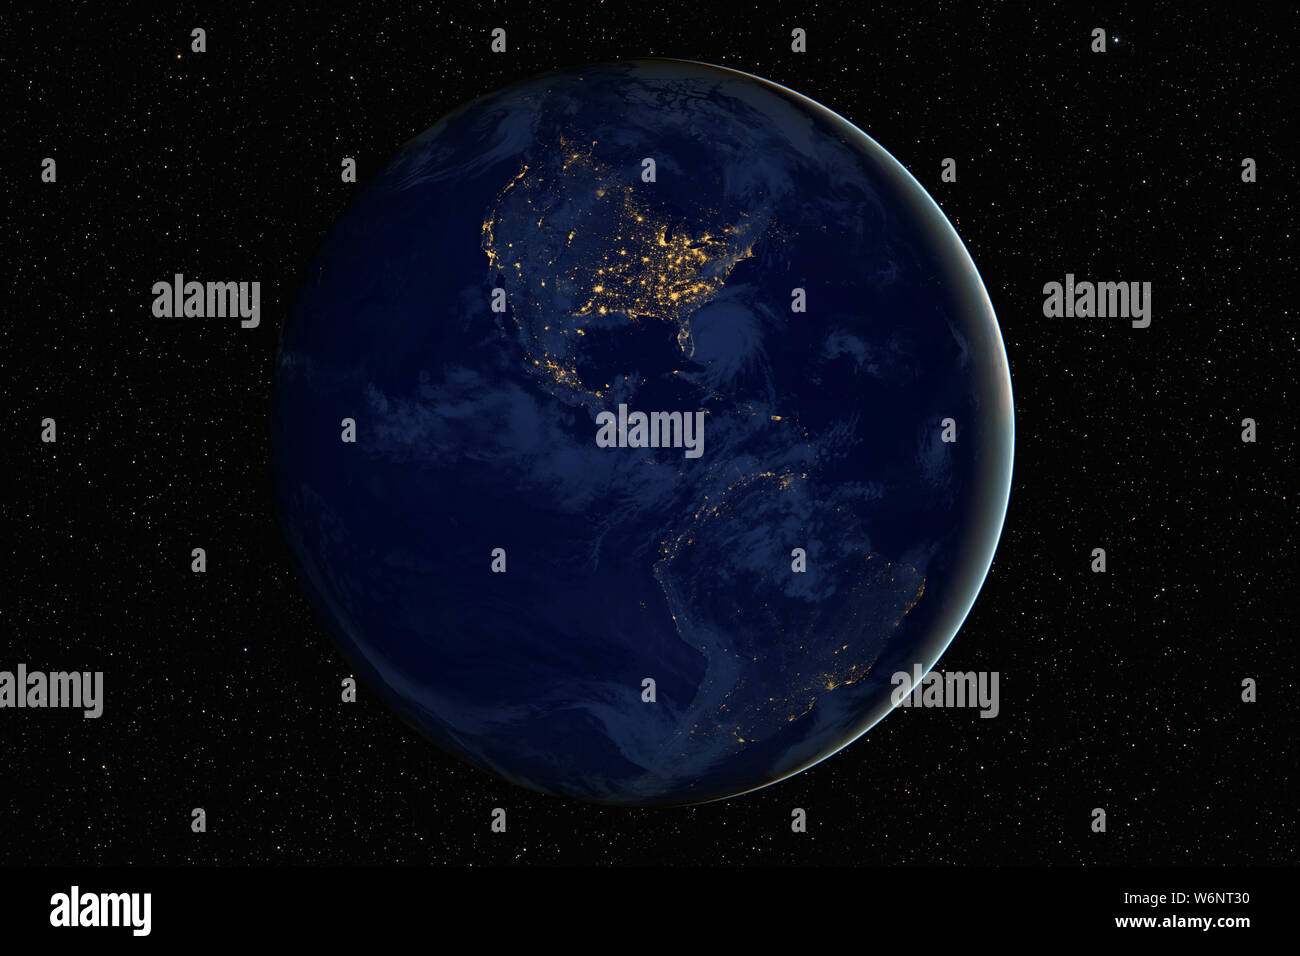 Der Planet Erde in der Nacht gegen die dunklen Sternenhimmel Hintergrund, Elemente dieses Bild von der NASA eingerichtet Stockfoto